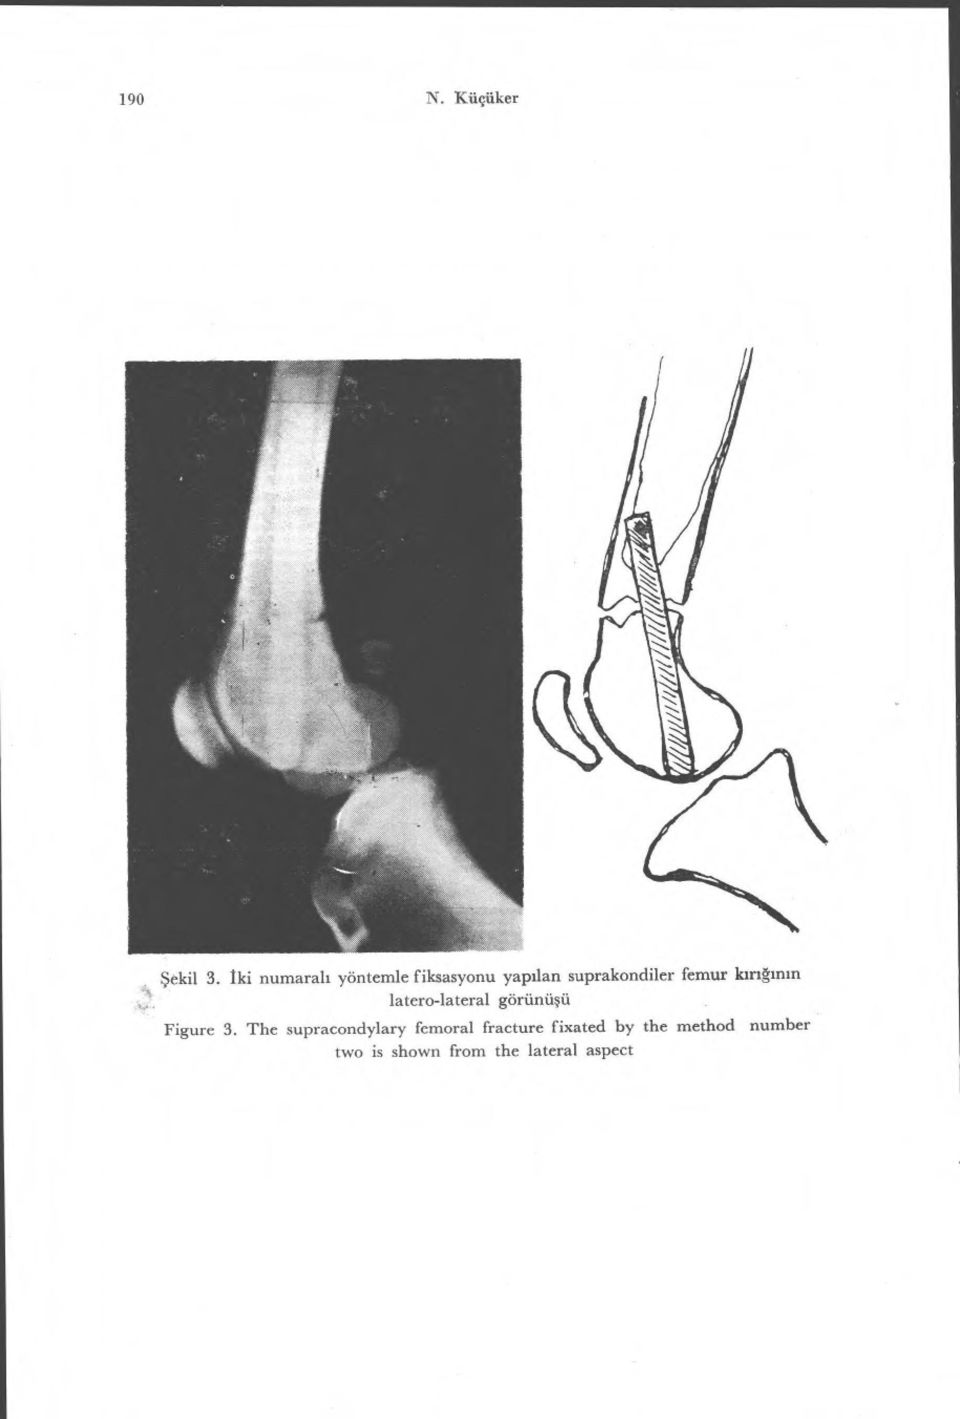 femur lar ıg ın ın latero-lateral görünü şü Figure 3.